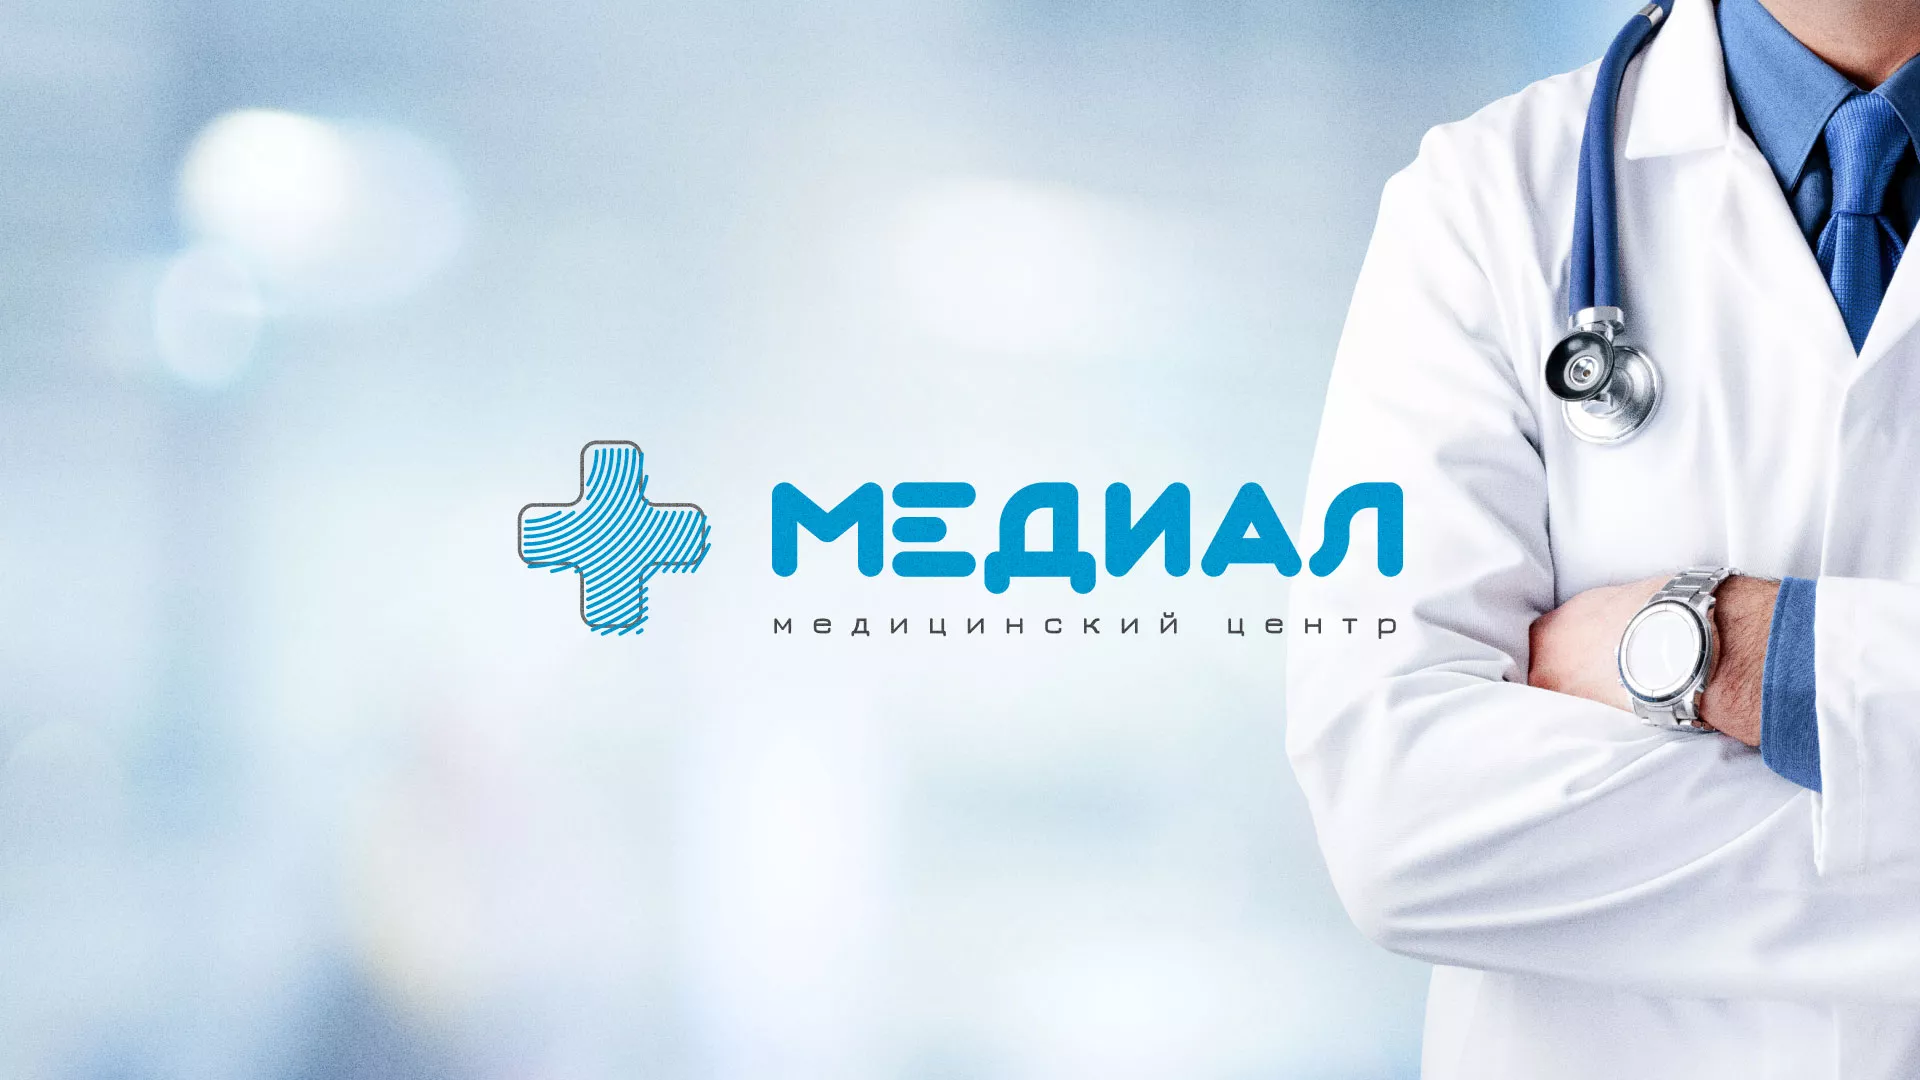 Создание сайта для медицинского центра «Медиал» в Великом Новгороде